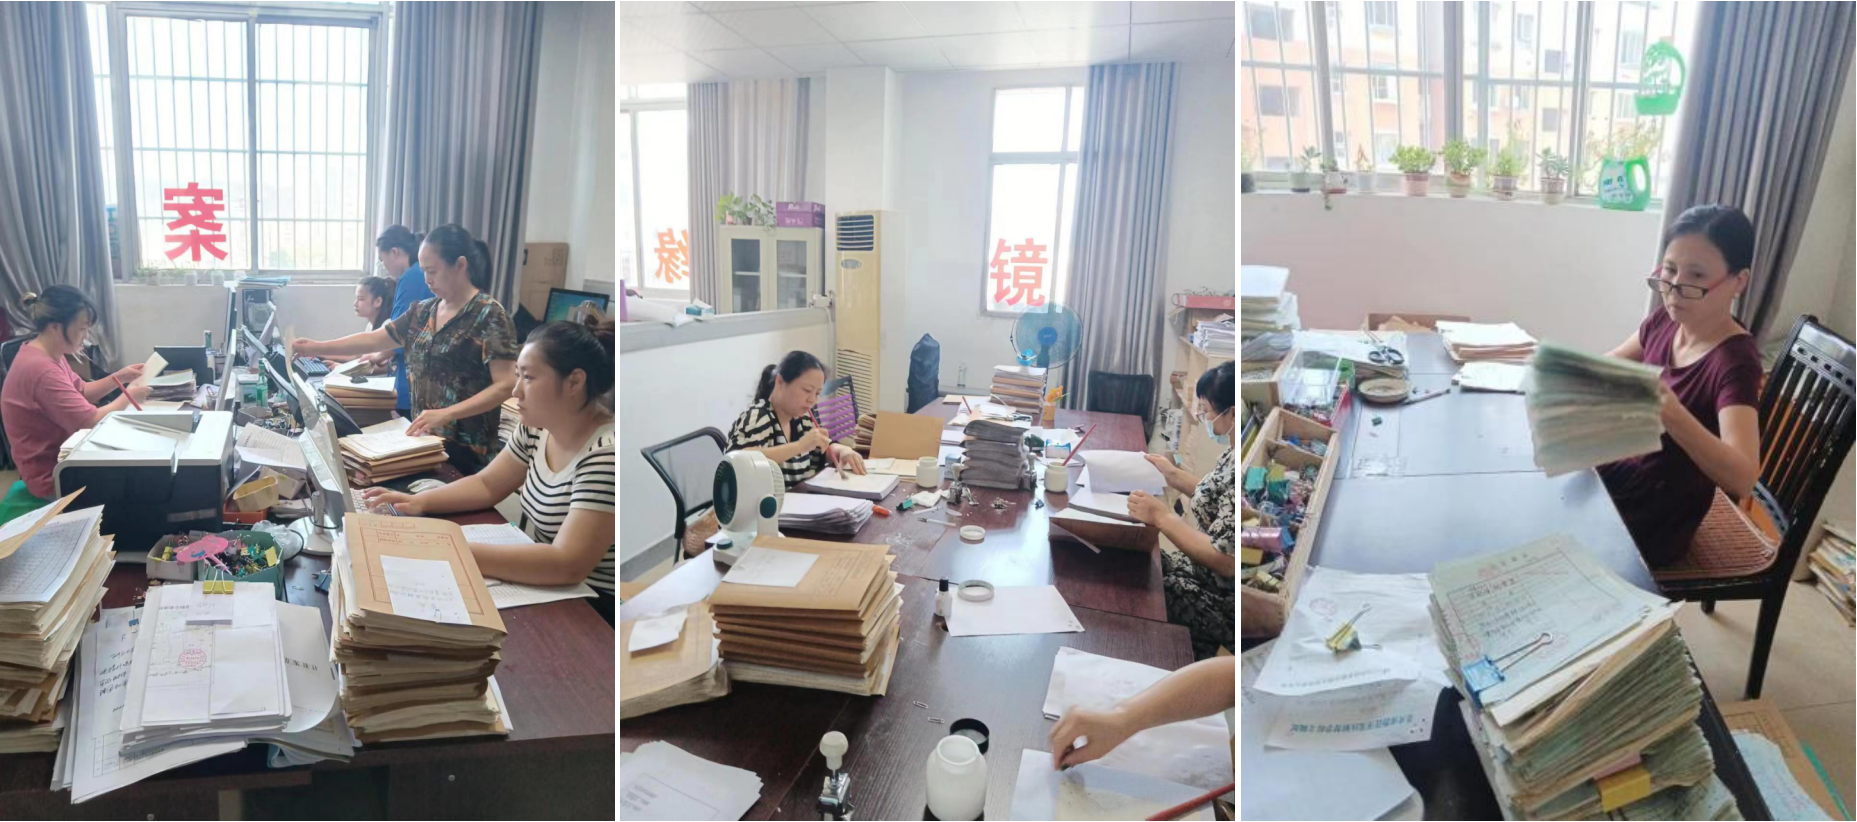 重庆市镜中缘档案科技有限公司：提供专业档案管理服务